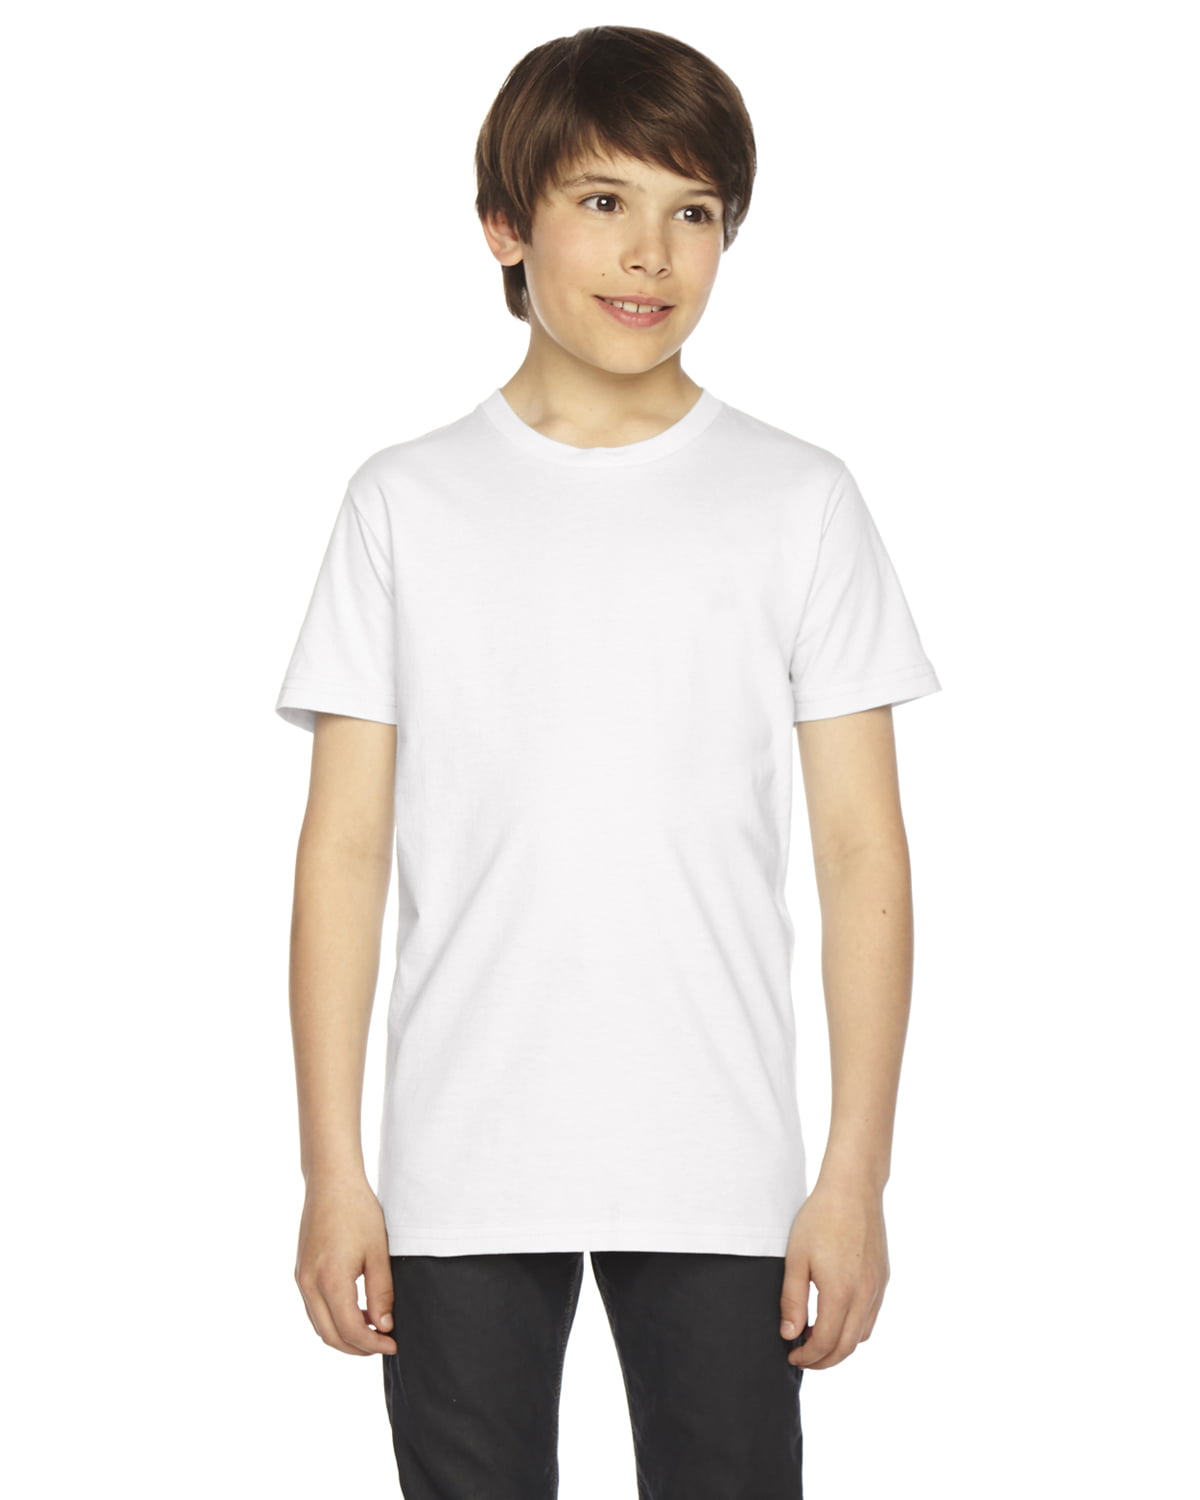 Boys Clementine Fine Jersey Short-Sleeve T-Shirt - Walmart.com